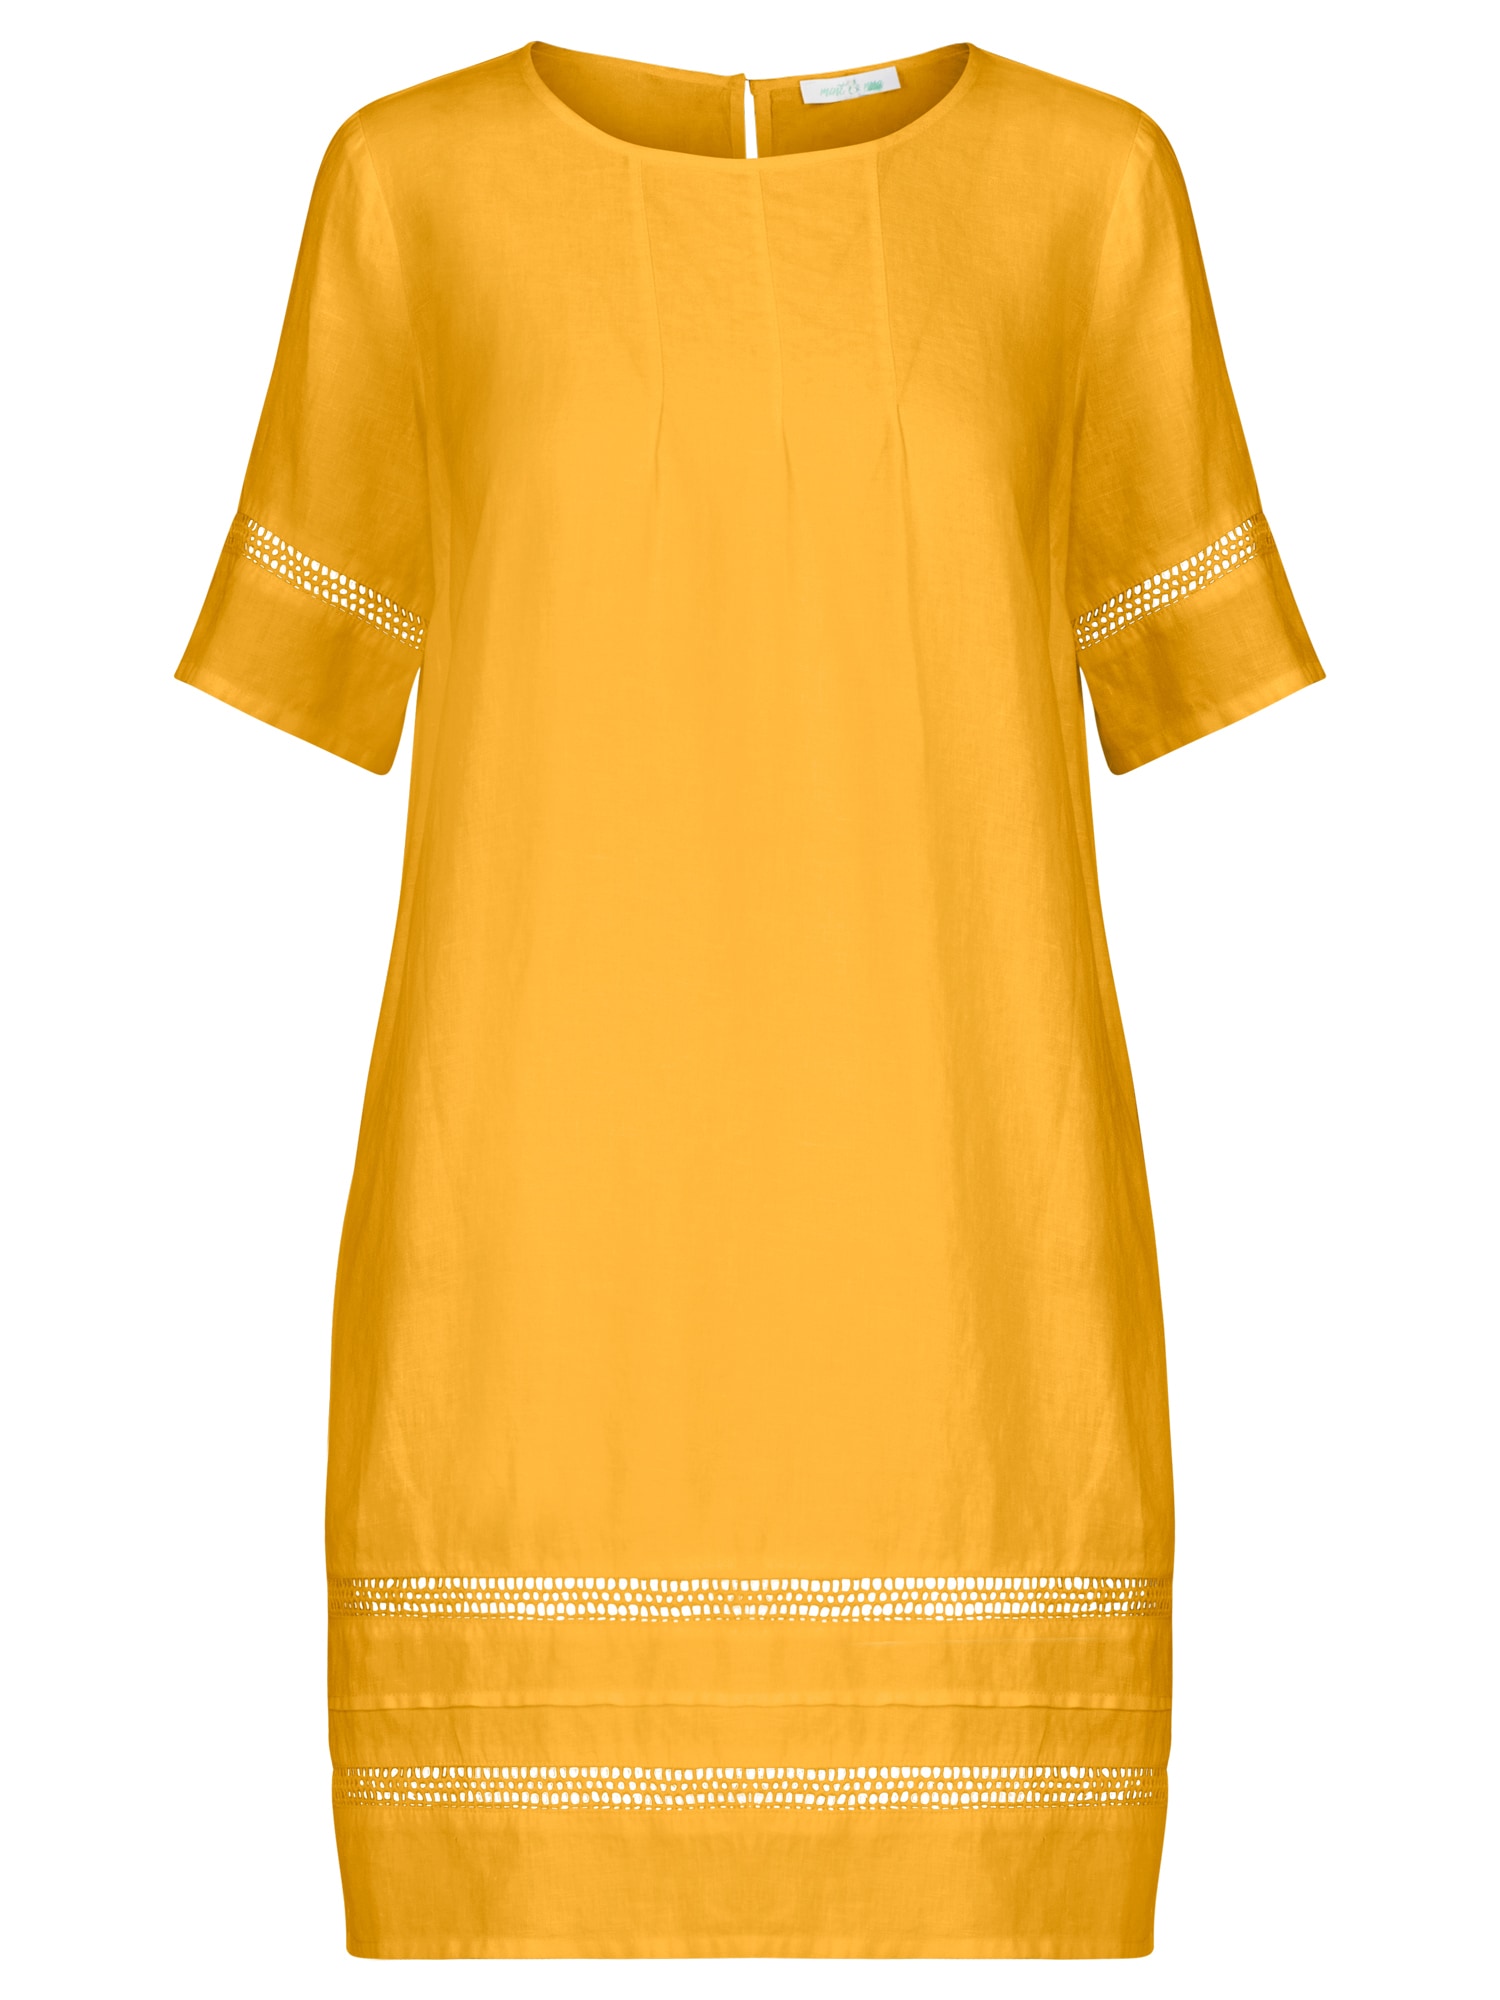 Letné šaty zlatá žltá mint mia